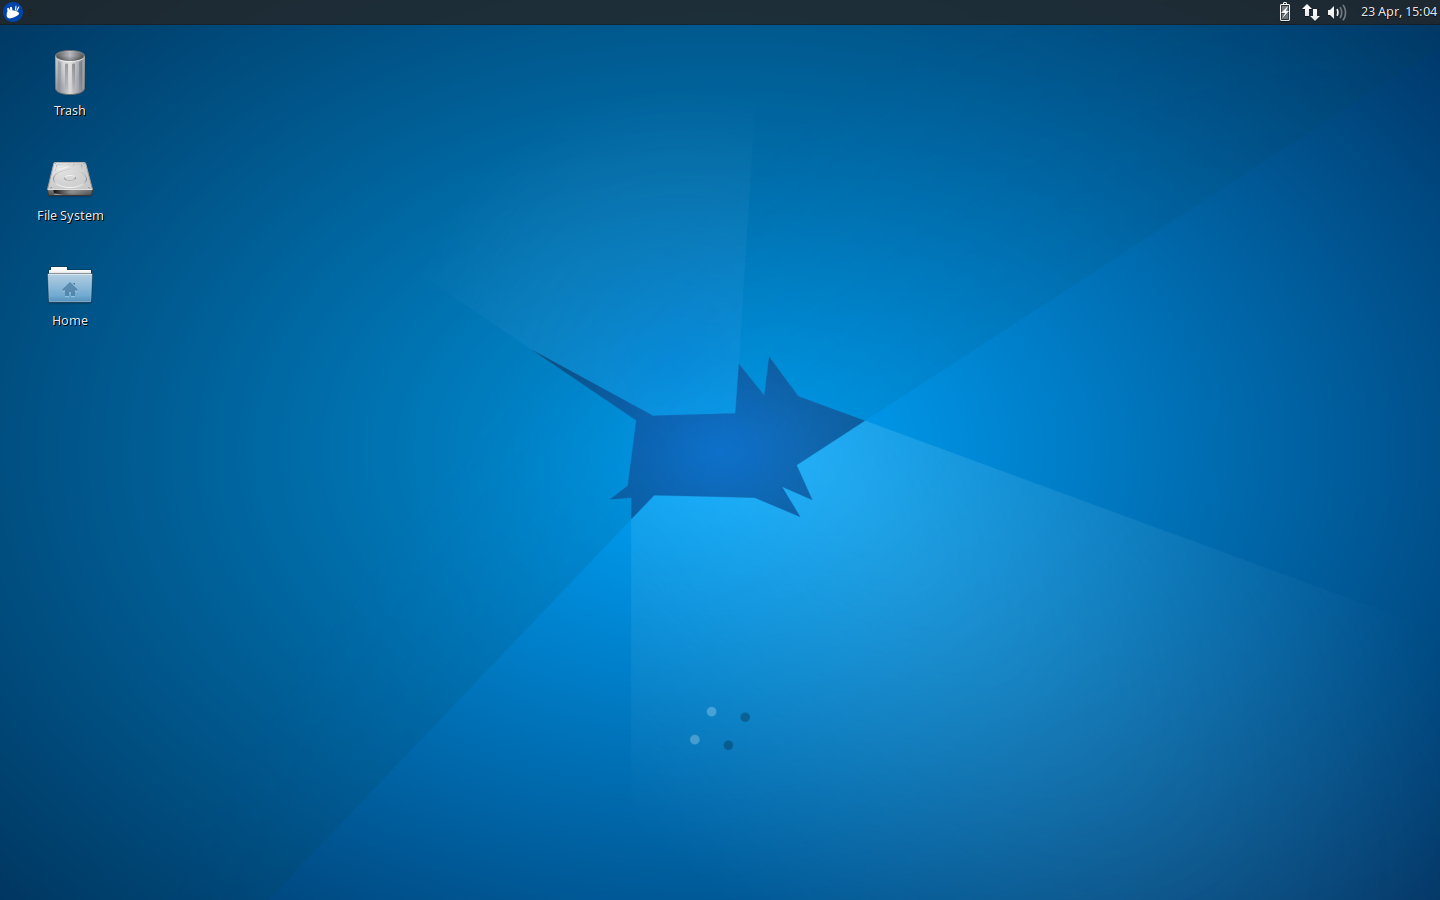 What's New in Xubuntu 15.04